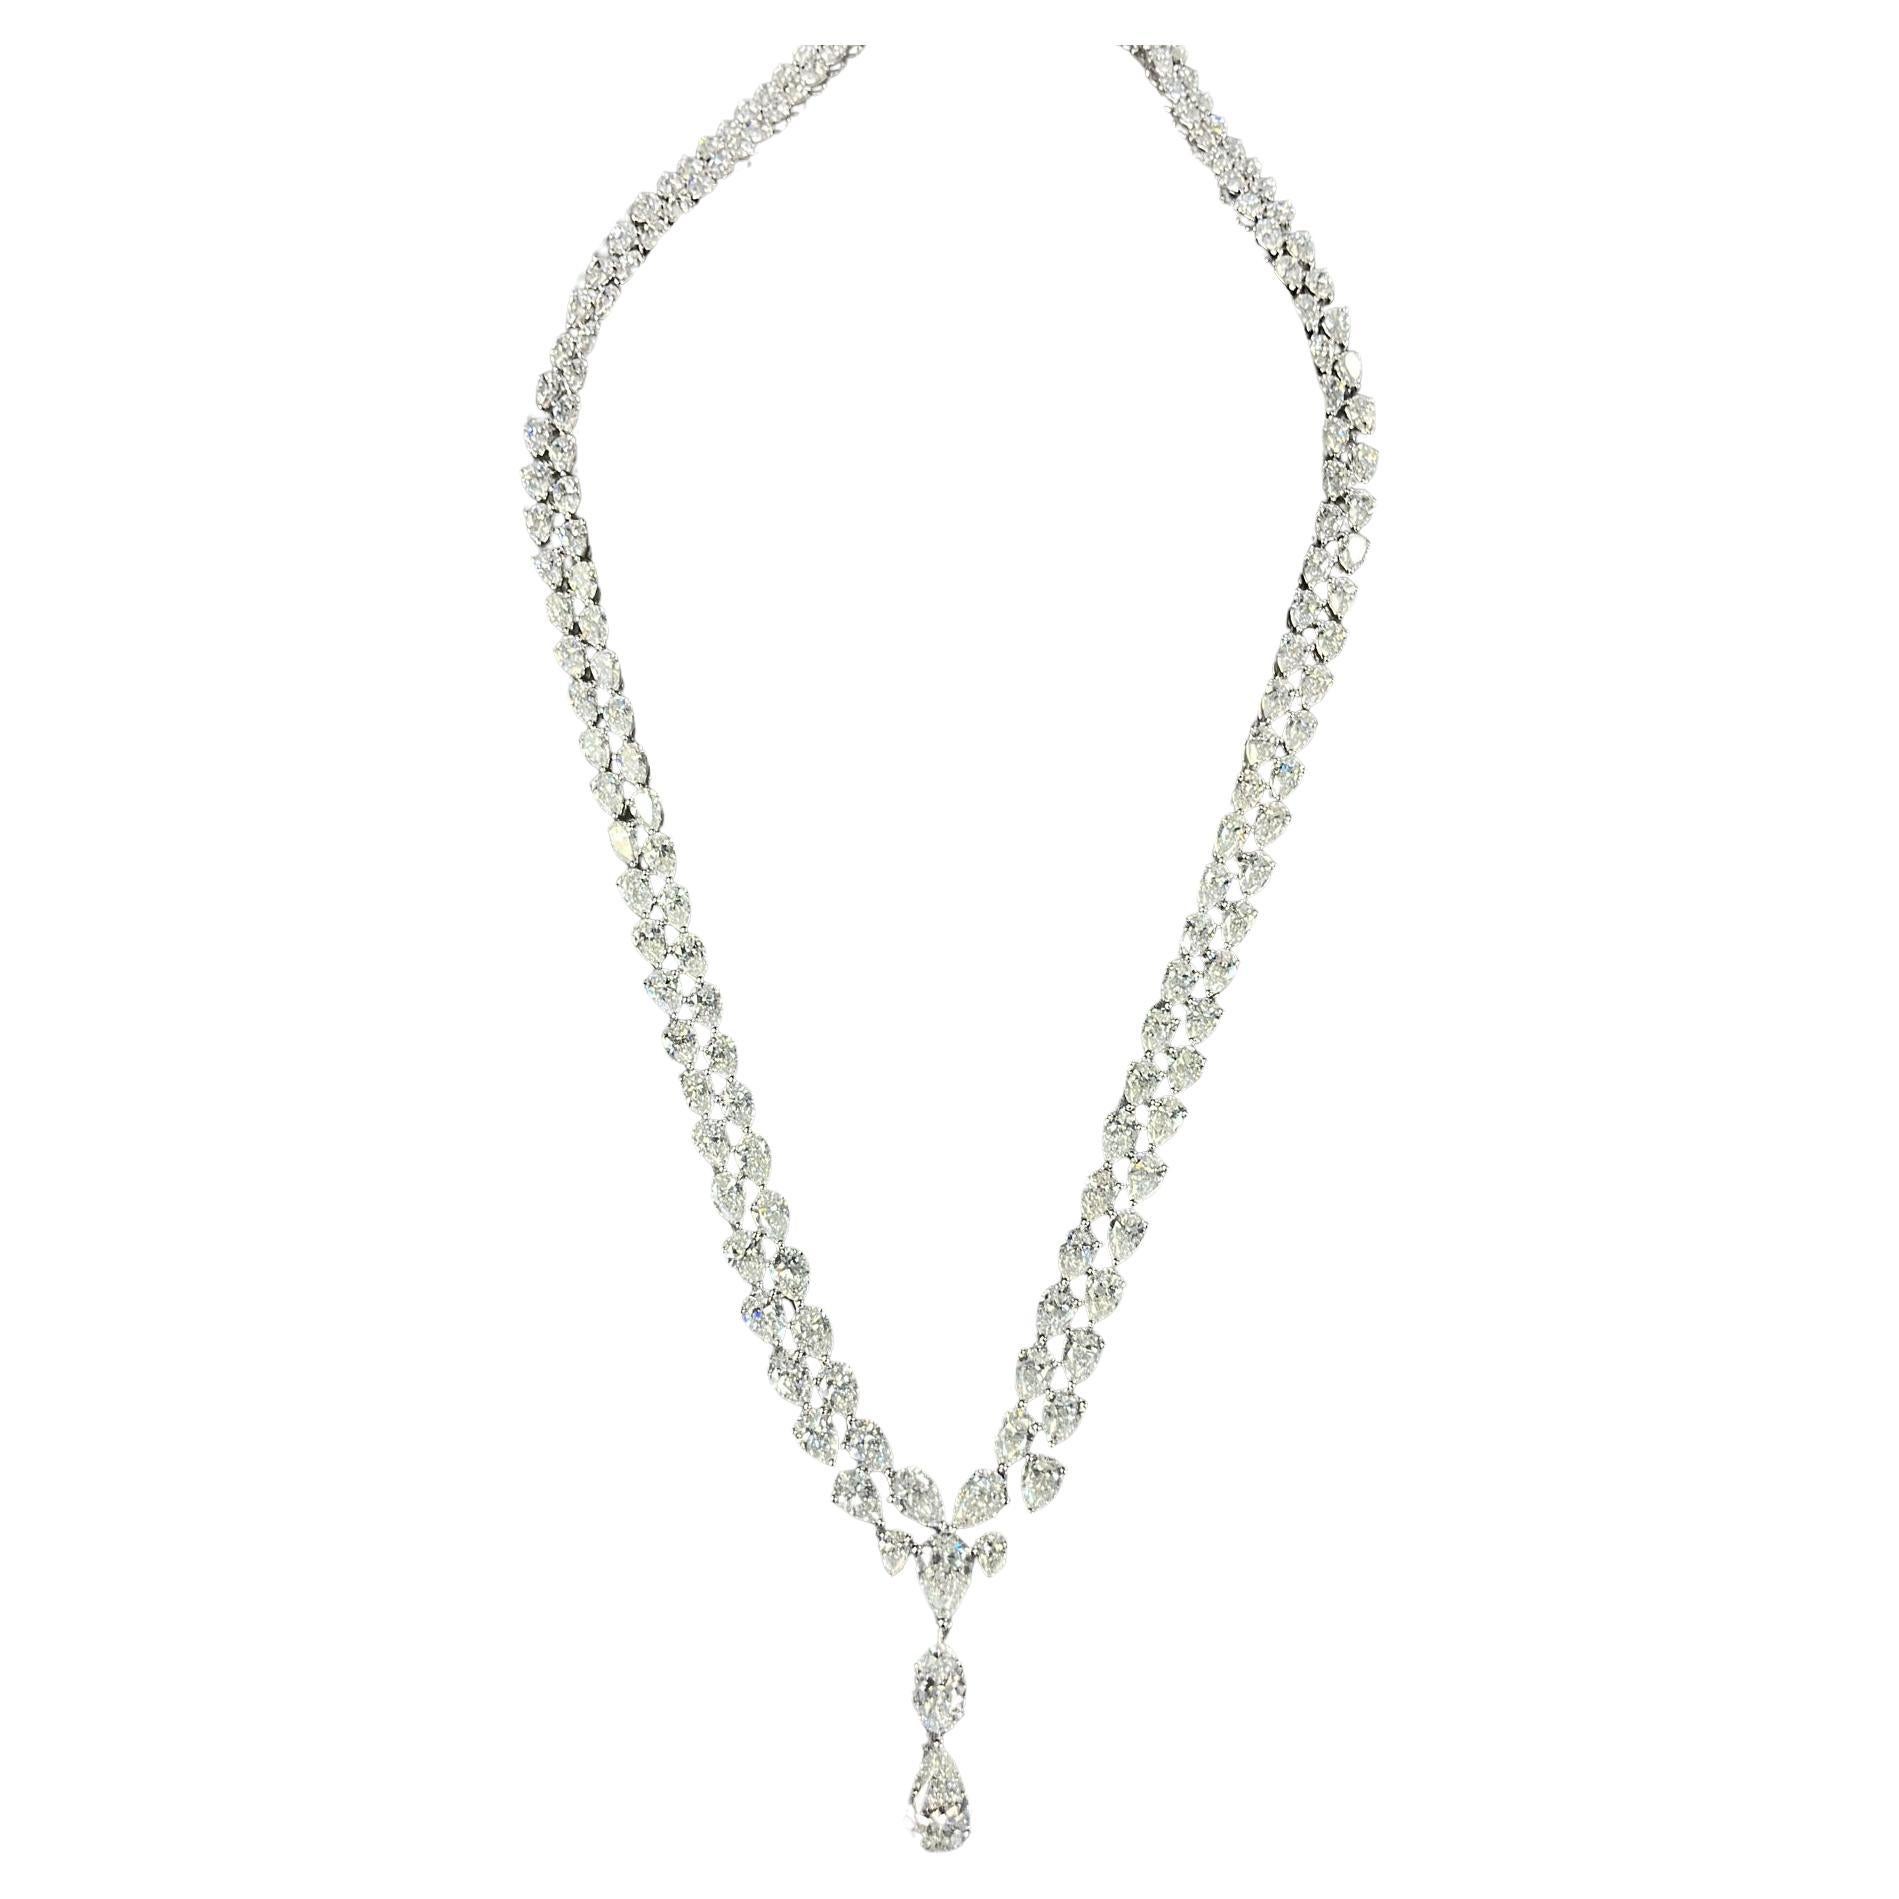 NEU 250, 000 18KT Wunderschöne seltene Fancy 30CT GIA zertifizierte Diamant-Halskette, neu mit Etikett im Angebot